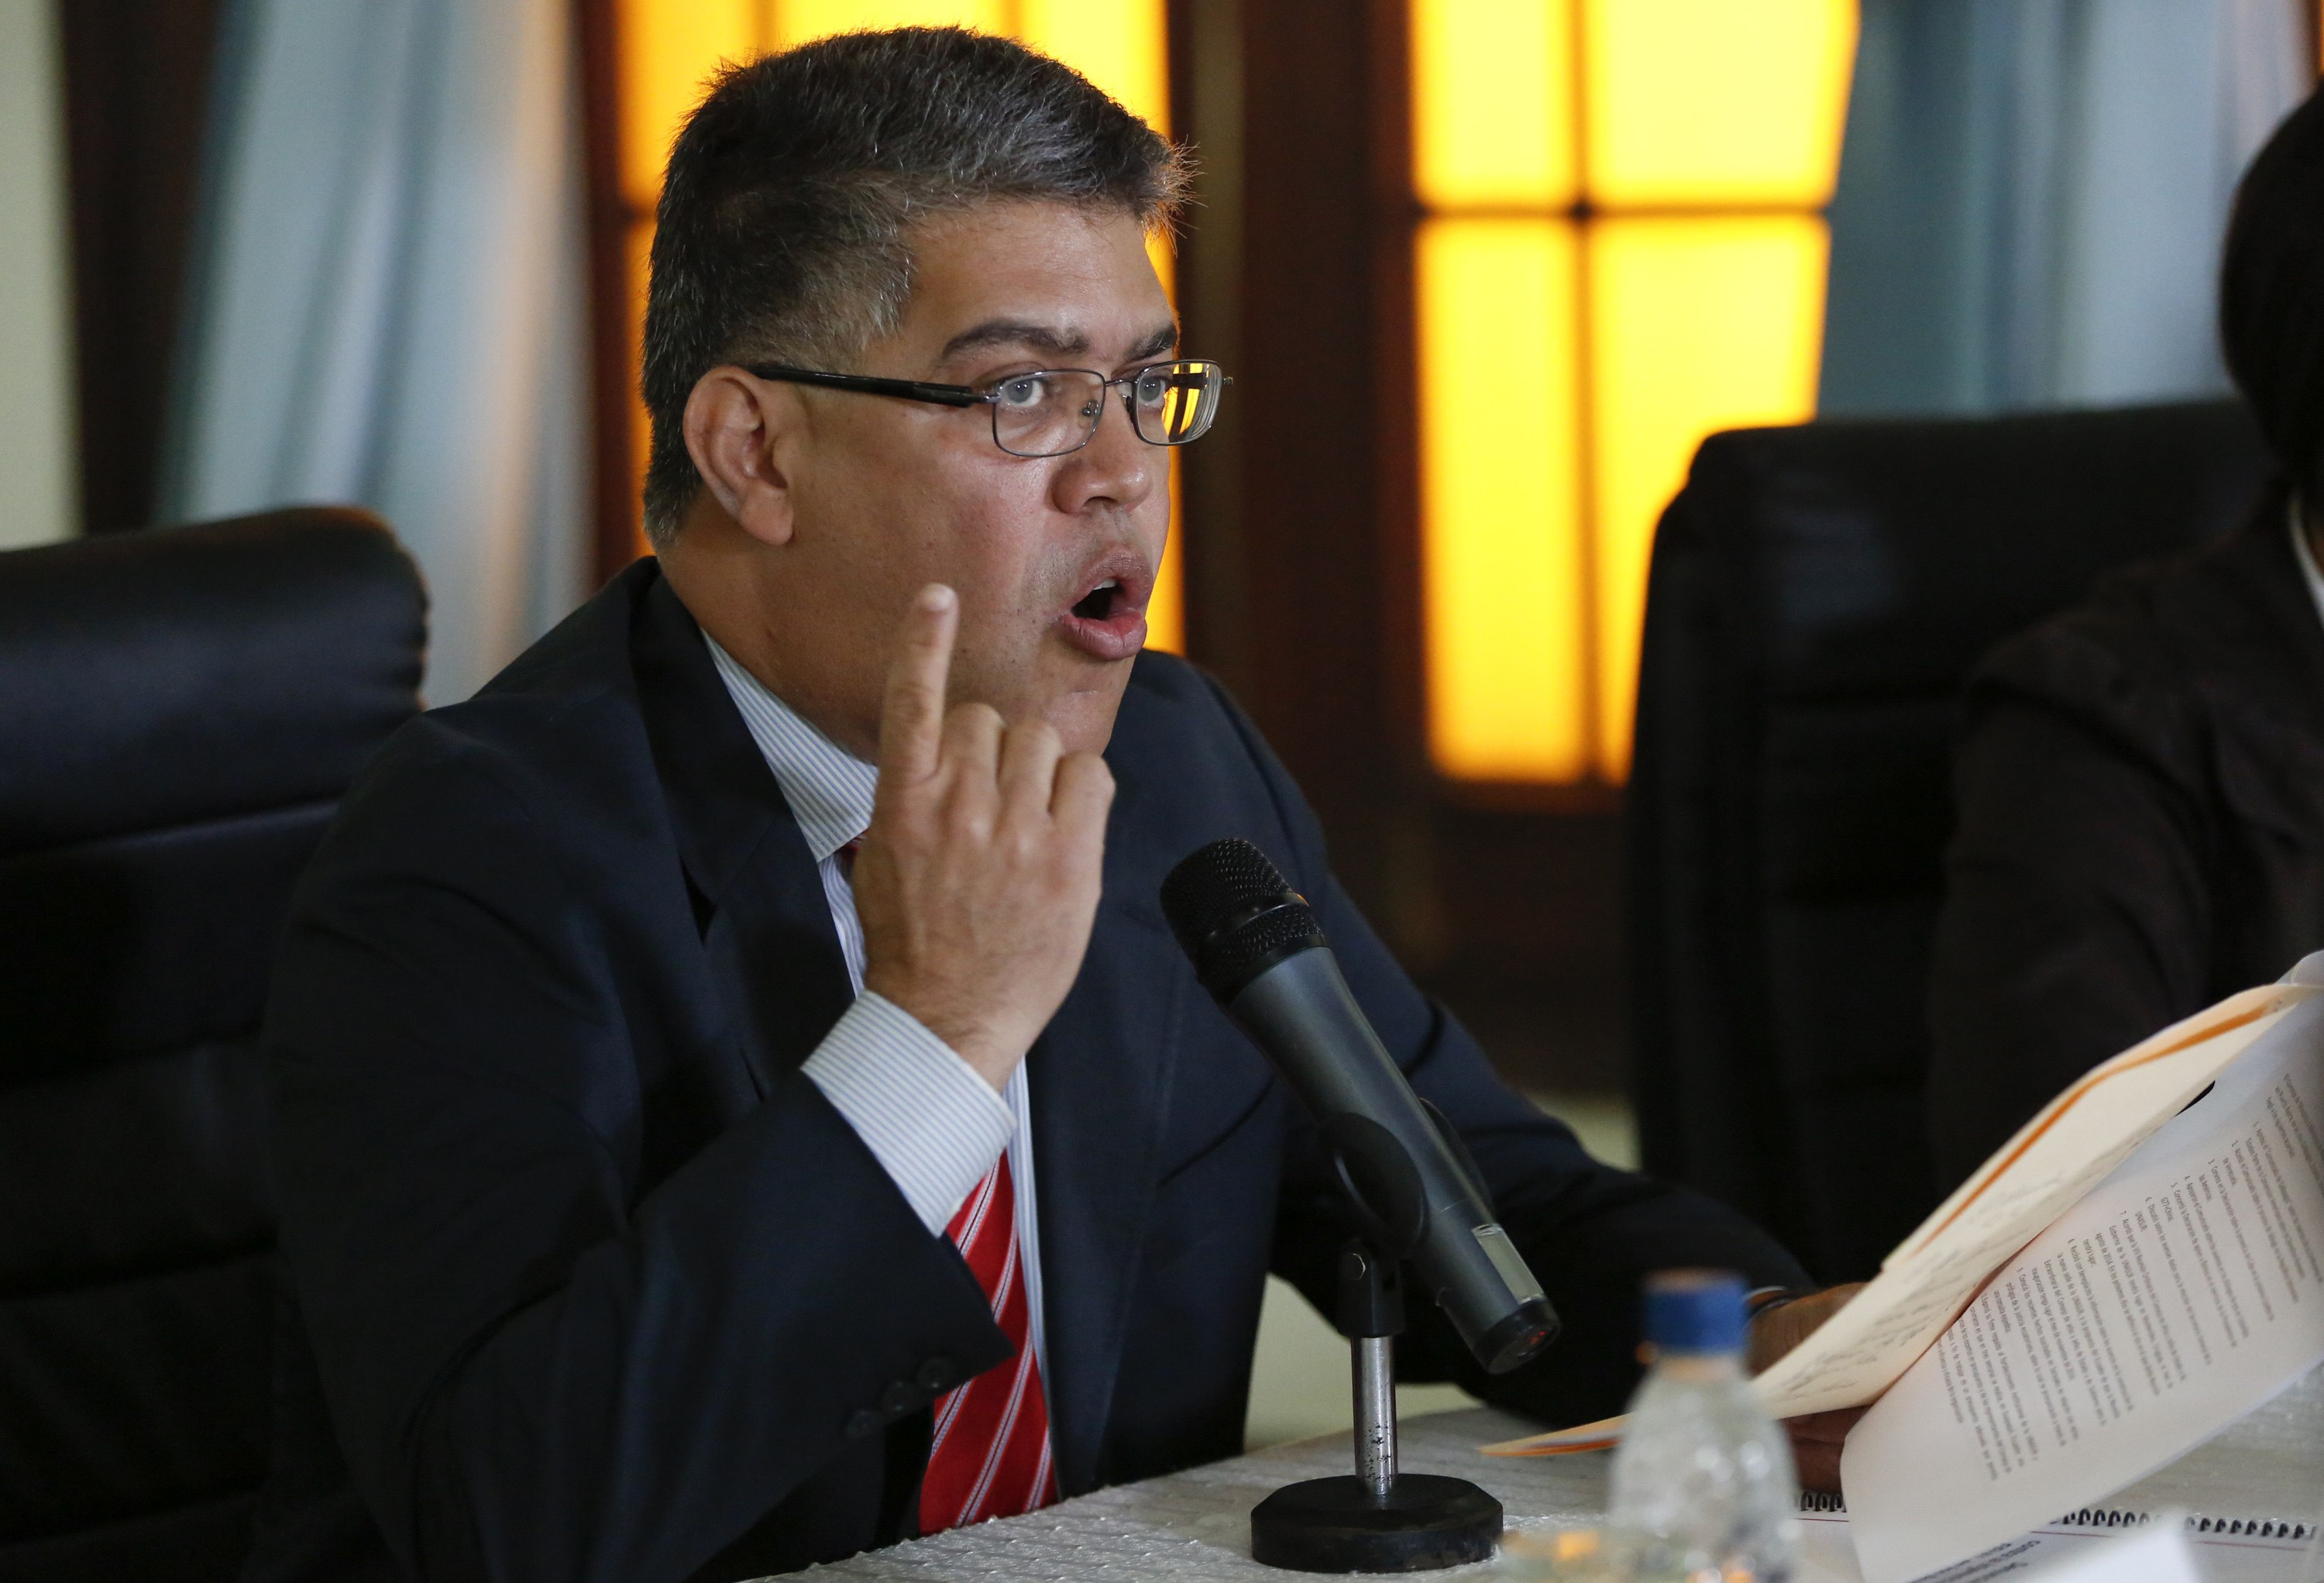 Jaua se fue a El Salvador para “consolidar relaciones”